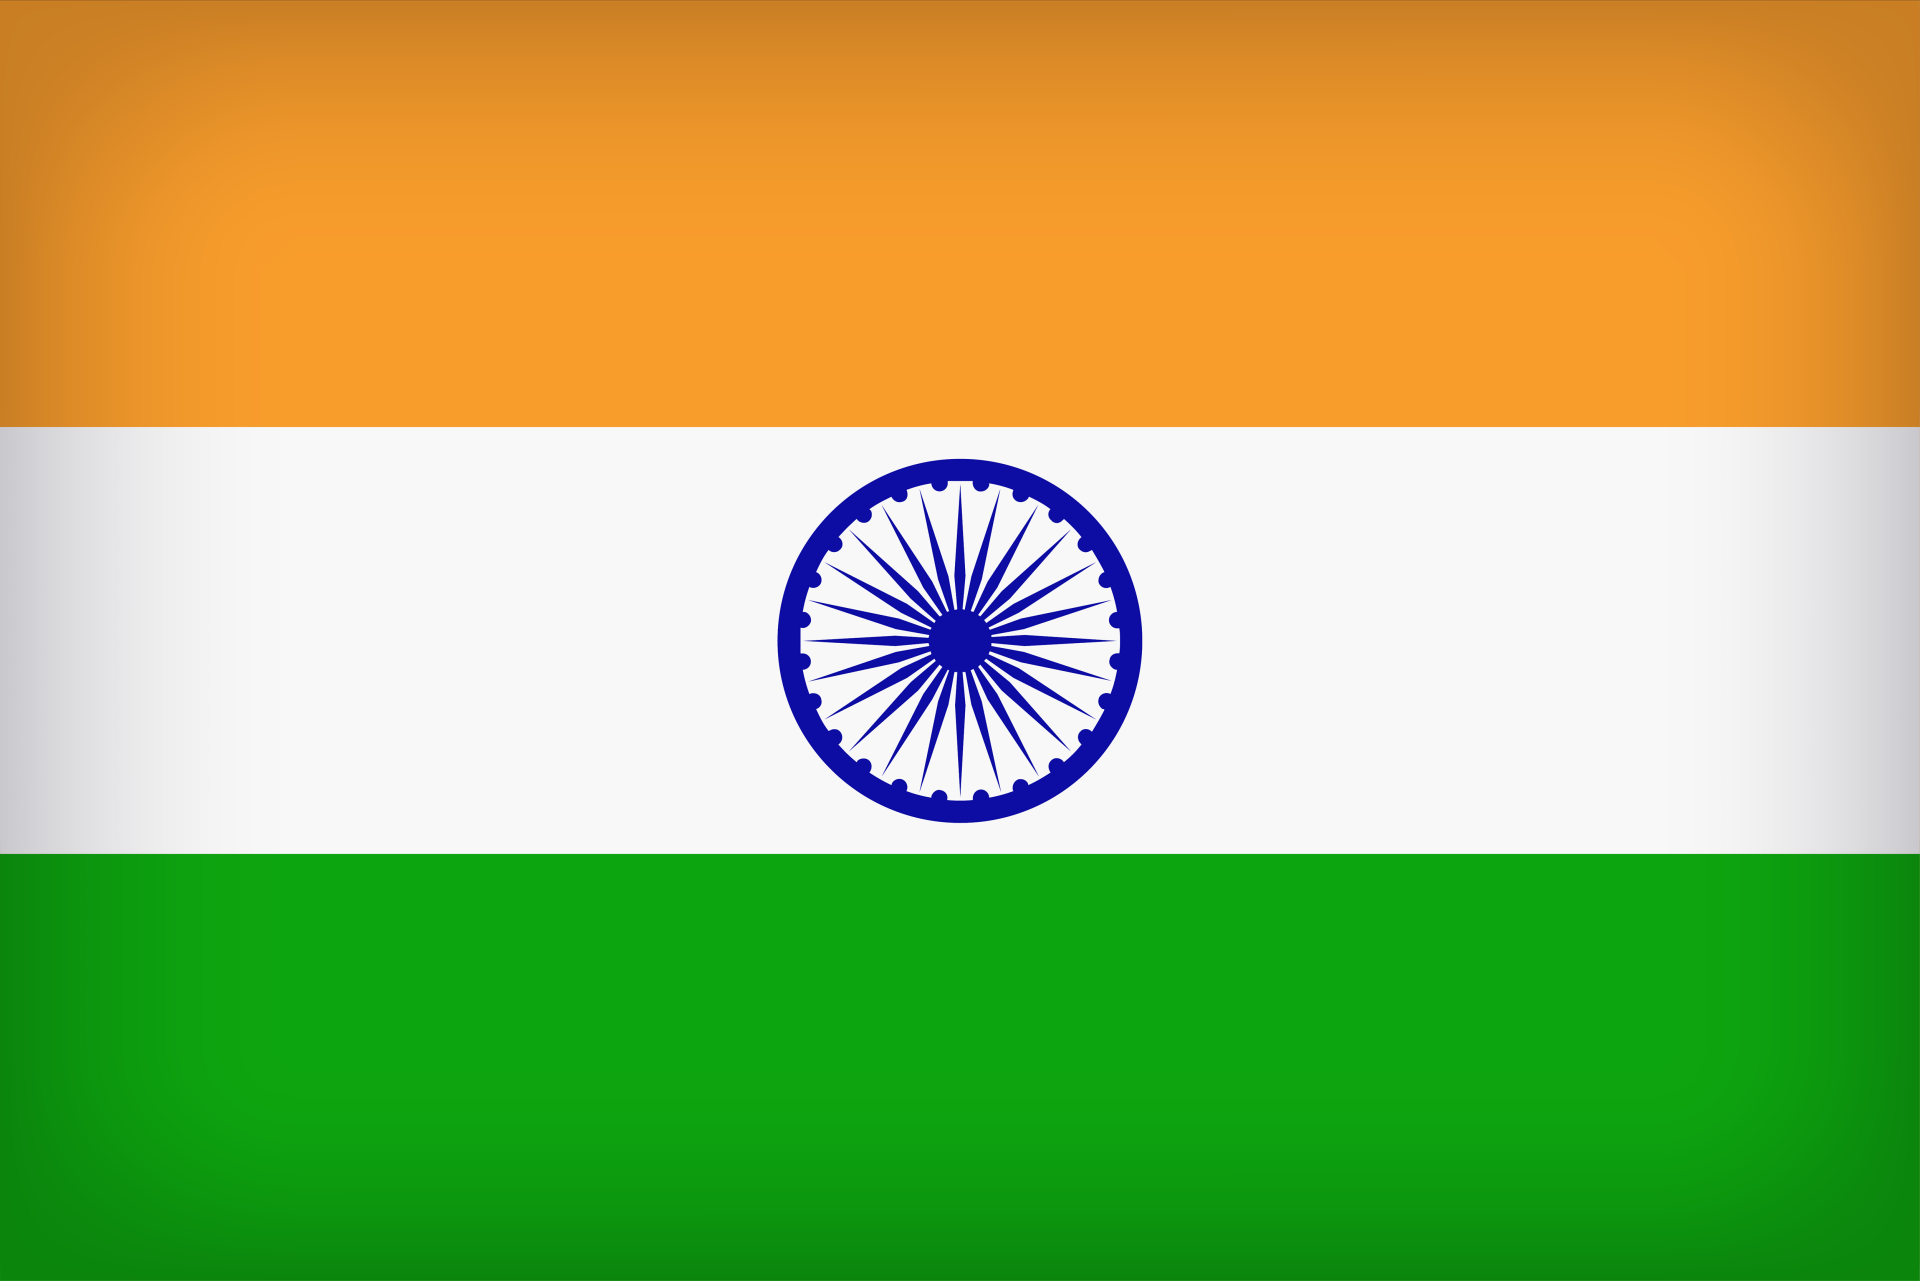 Quốc kỳ quốc gia Ấn Độ nổi tiếng với thiết kế đầy màu sắc và ý nghĩa sâu sắc. Đó là biểu tượng của sự đoàn kết và sự tự hào dân tộc. Hãy khám phá thêm về quốc kỳ này bằng cách xem các hình ảnh liên quan!